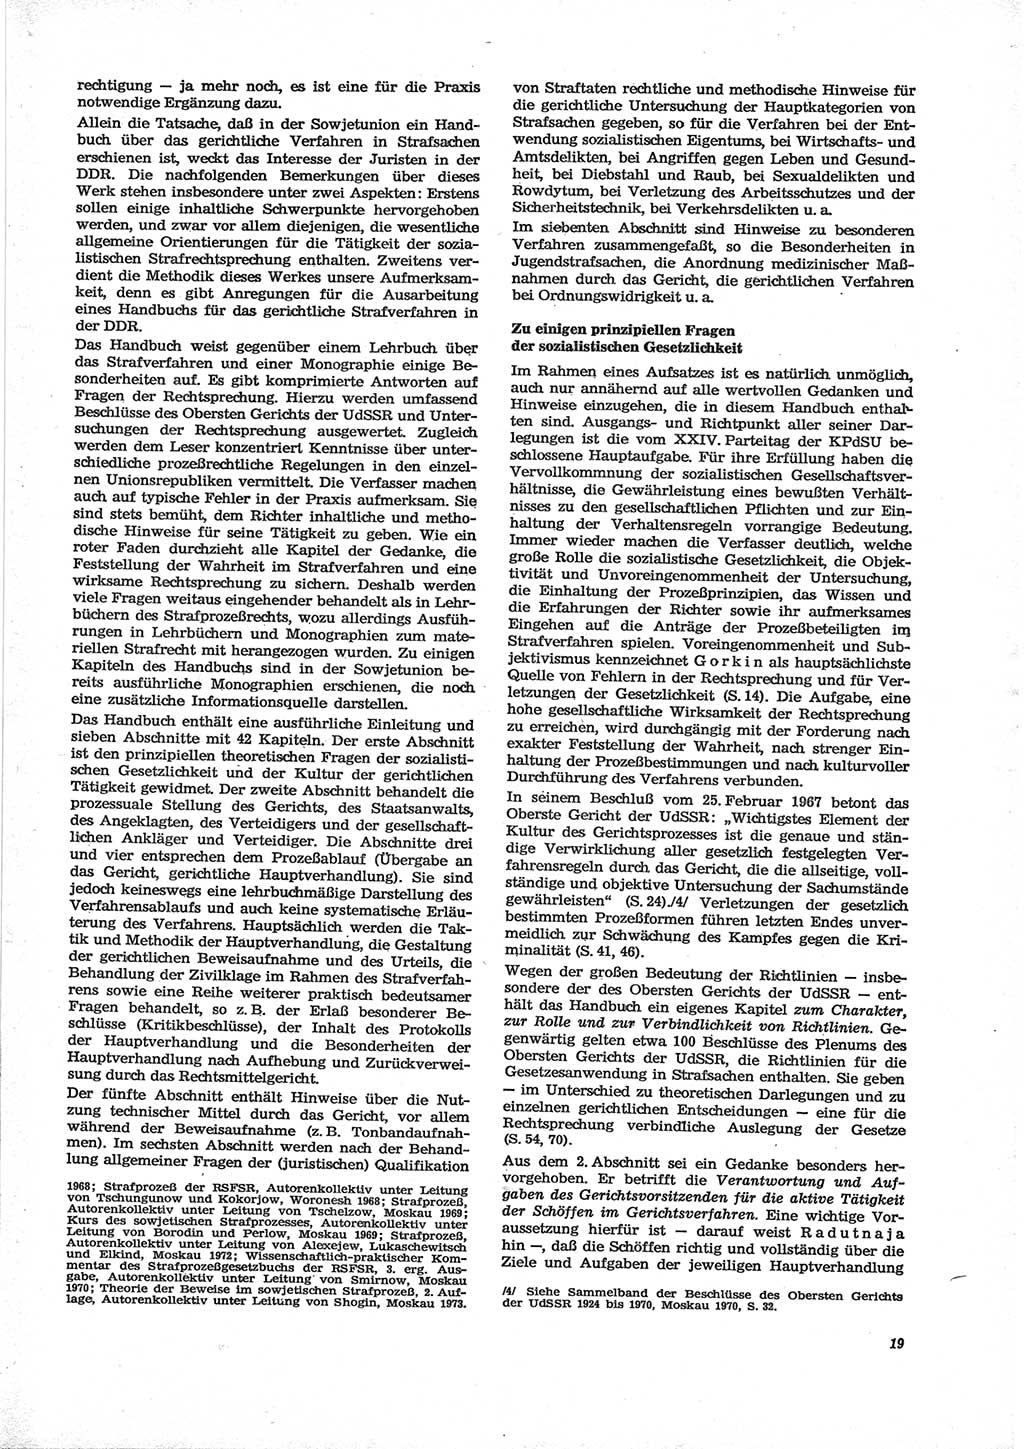 Neue Justiz (NJ), Zeitschrift für Recht und Rechtswissenschaft [Deutsche Demokratische Republik (DDR)], 28. Jahrgang 1974, Seite 19 (NJ DDR 1974, S. 19)